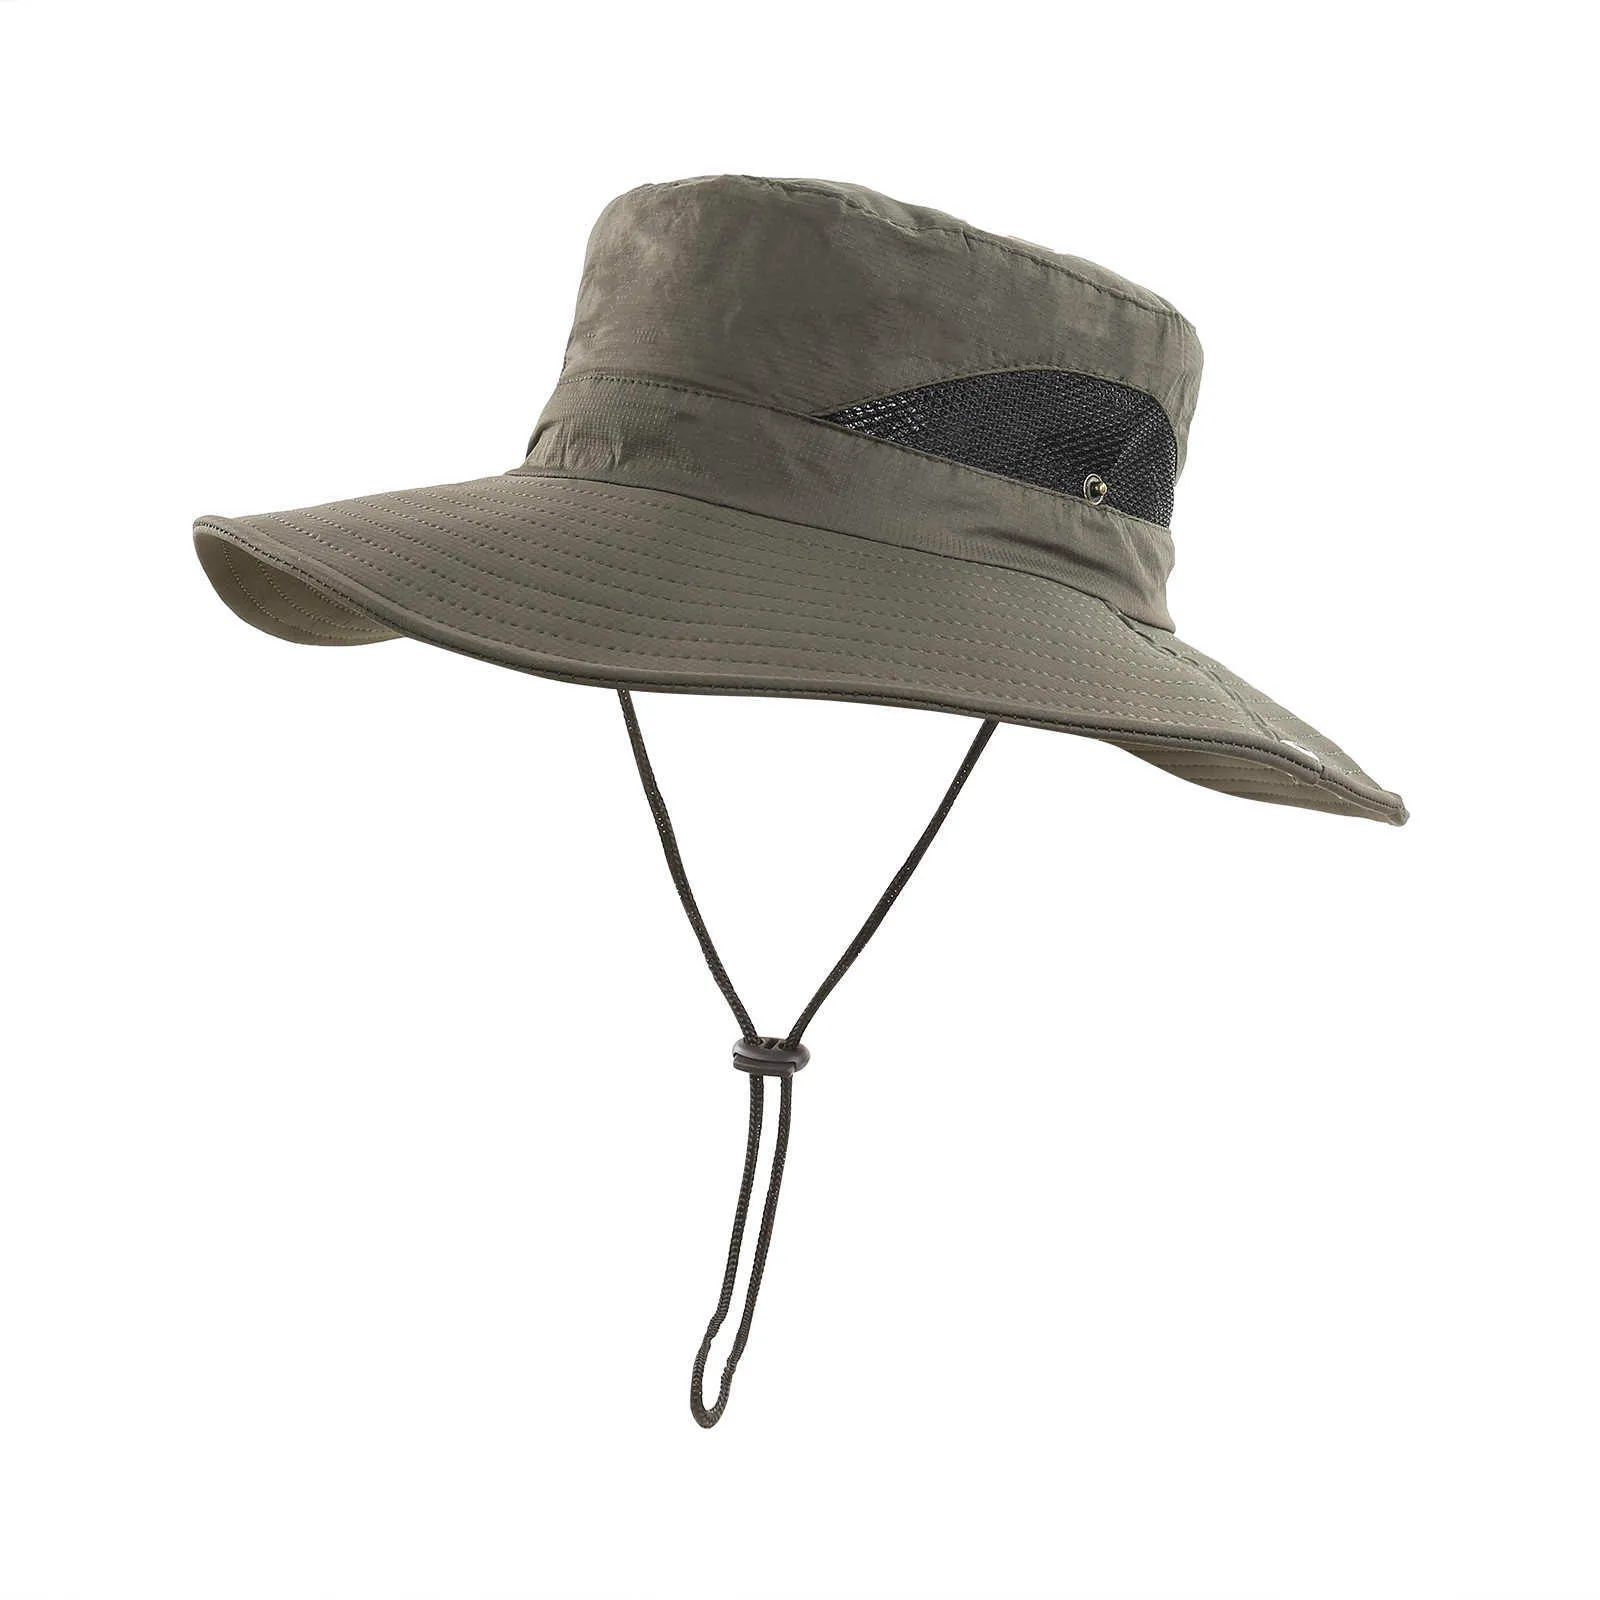 Chapeaux à large bord Mesh respirant couleur unie crème solaire chapeau de pêcheur été hommes grand bord protection solaire extérieure casquettes de seau 2021 R230308